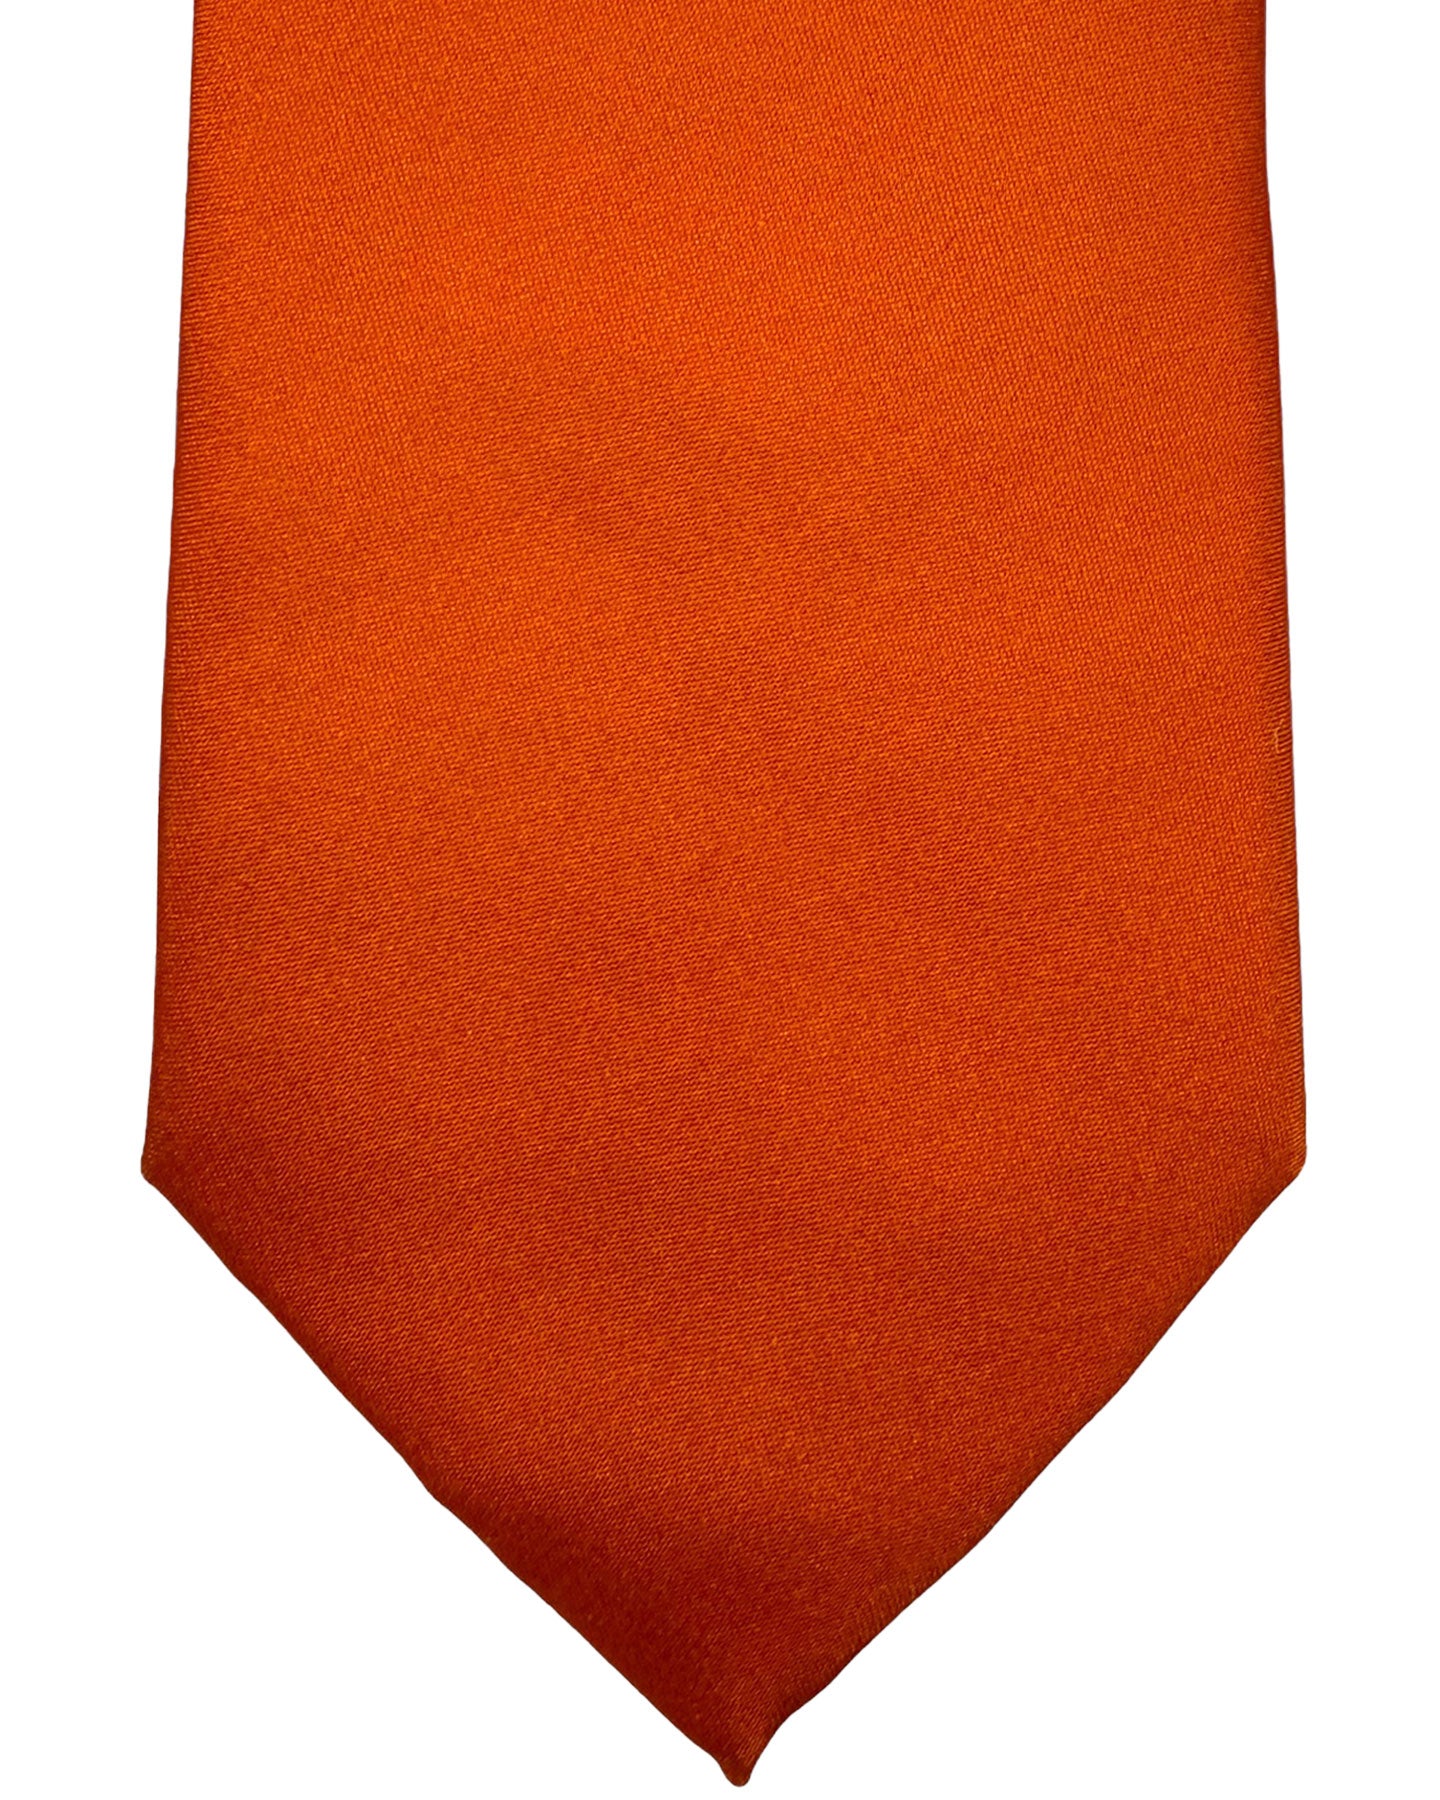 Moschino Tie Orange Solid Design 